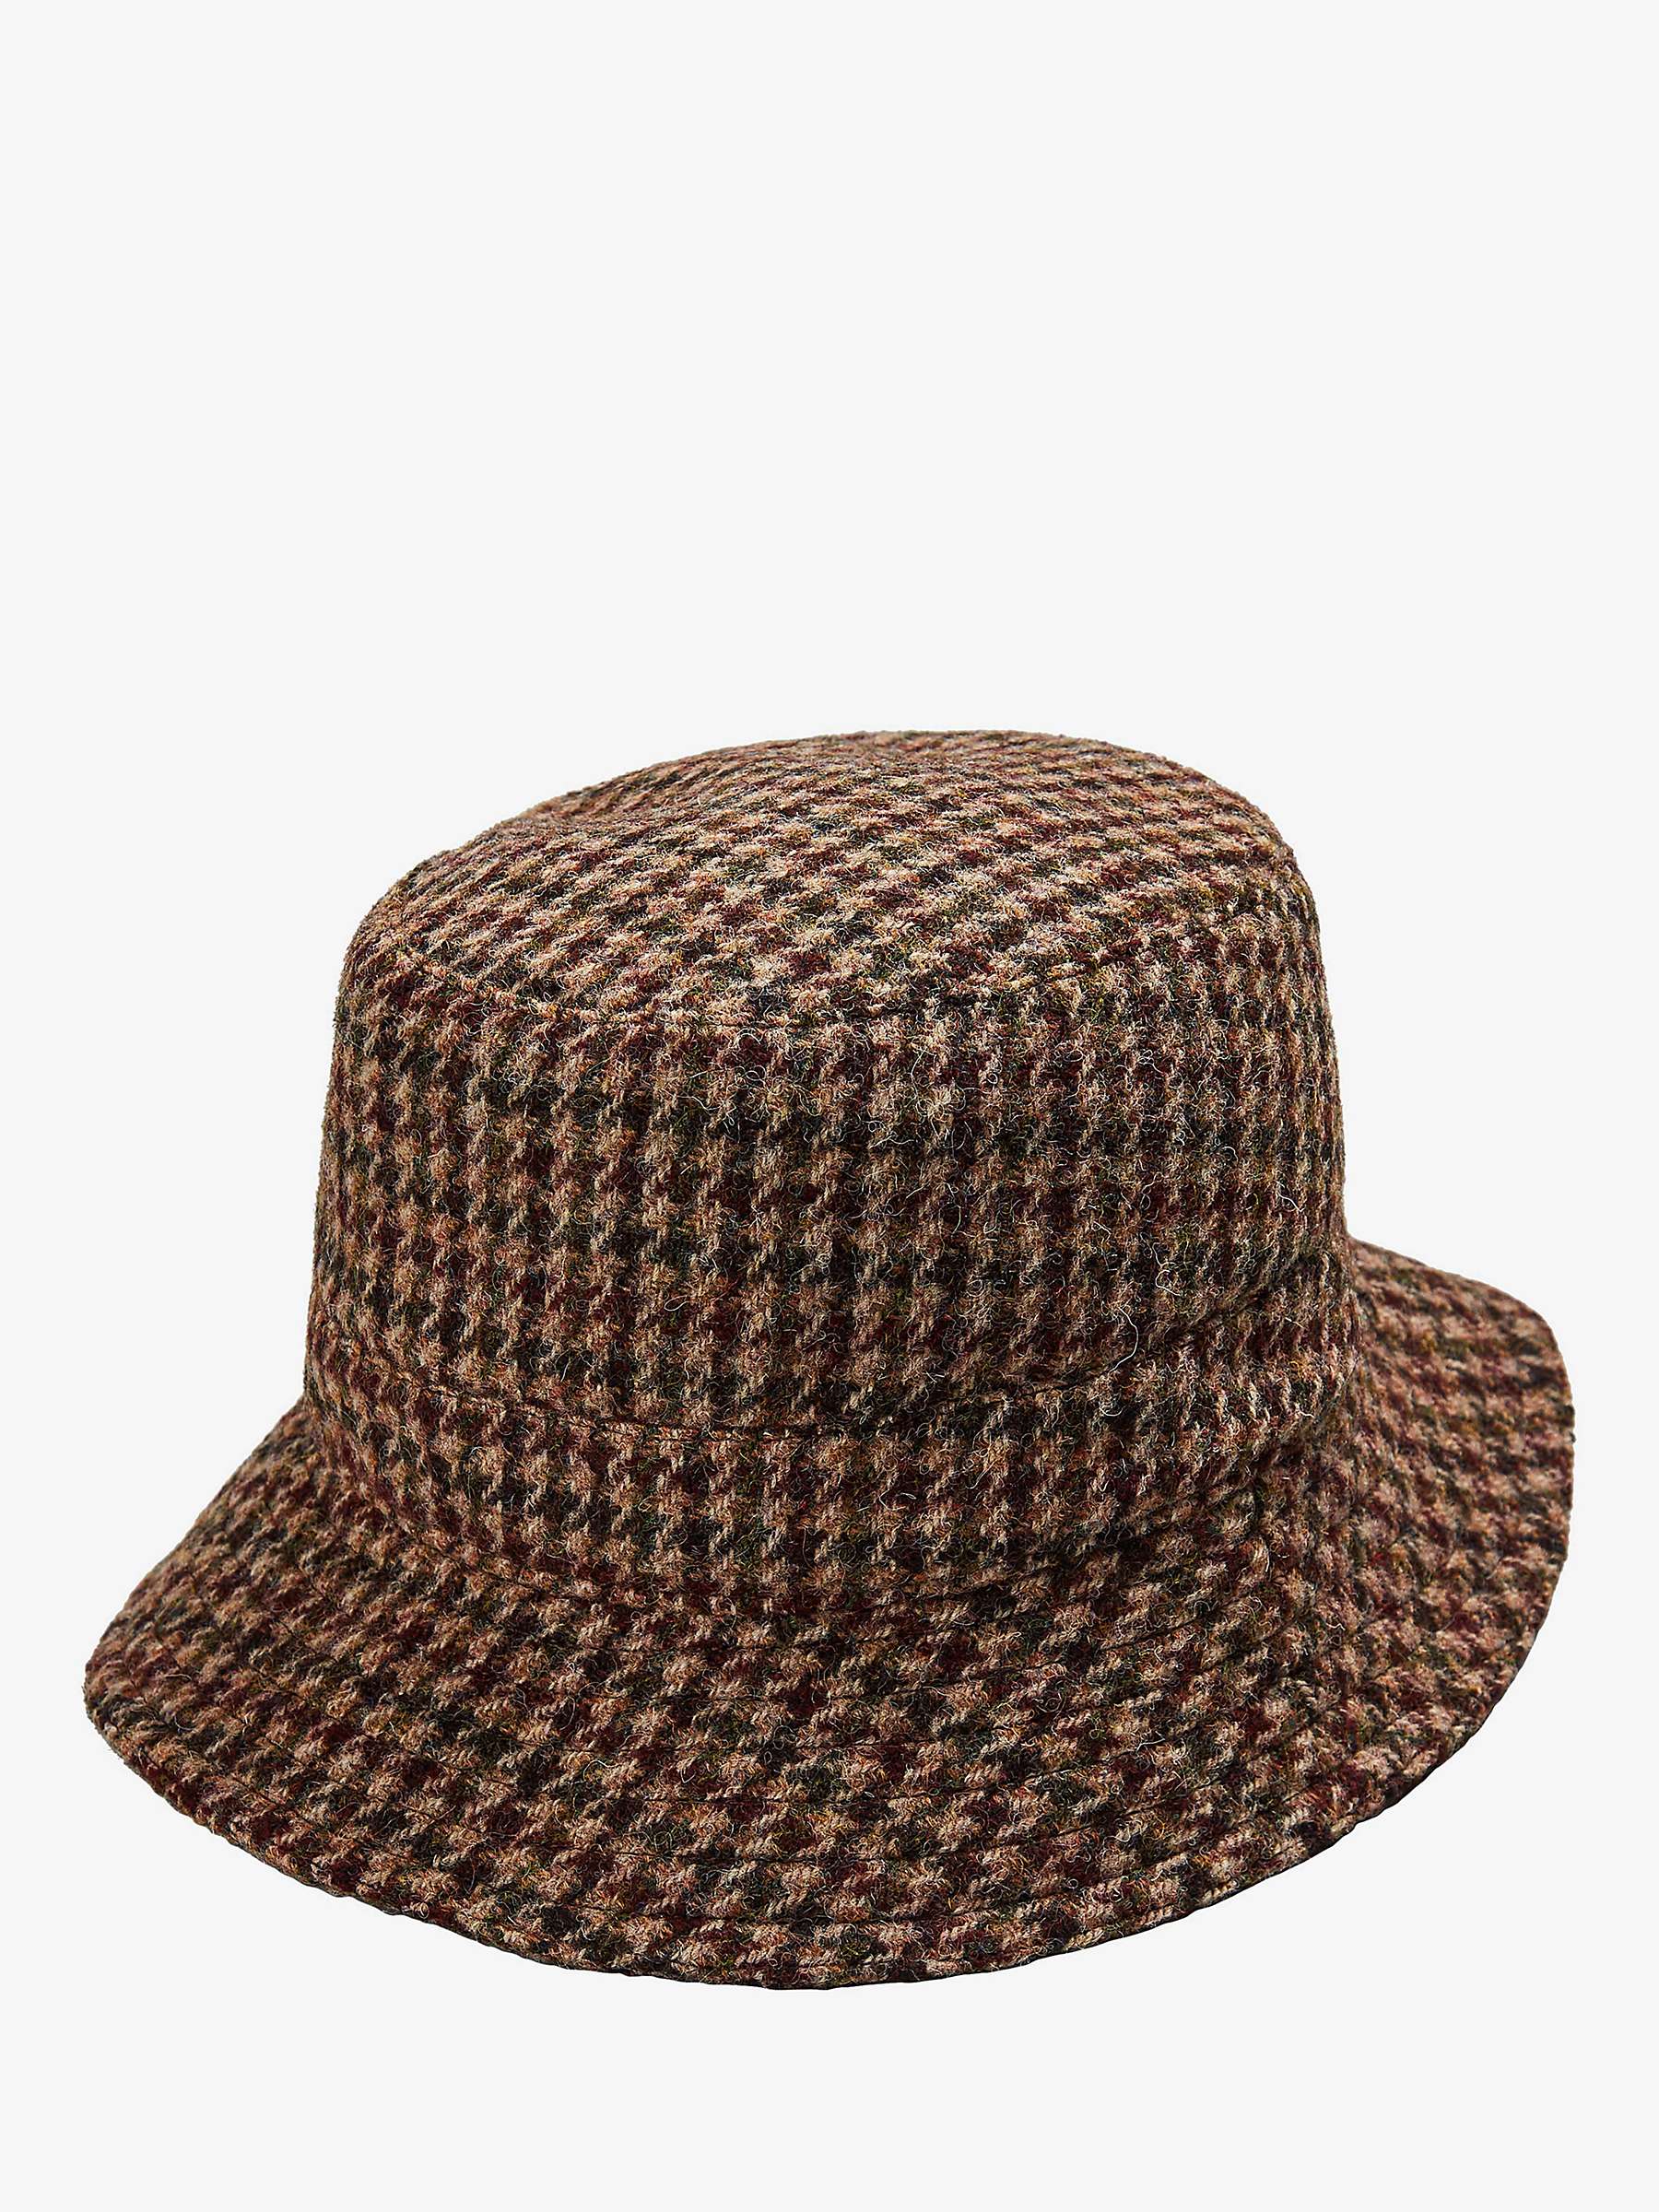 Buy Brora Harris Tweed Wool Bucket Hat, Berry/Otter Online at johnlewis.com